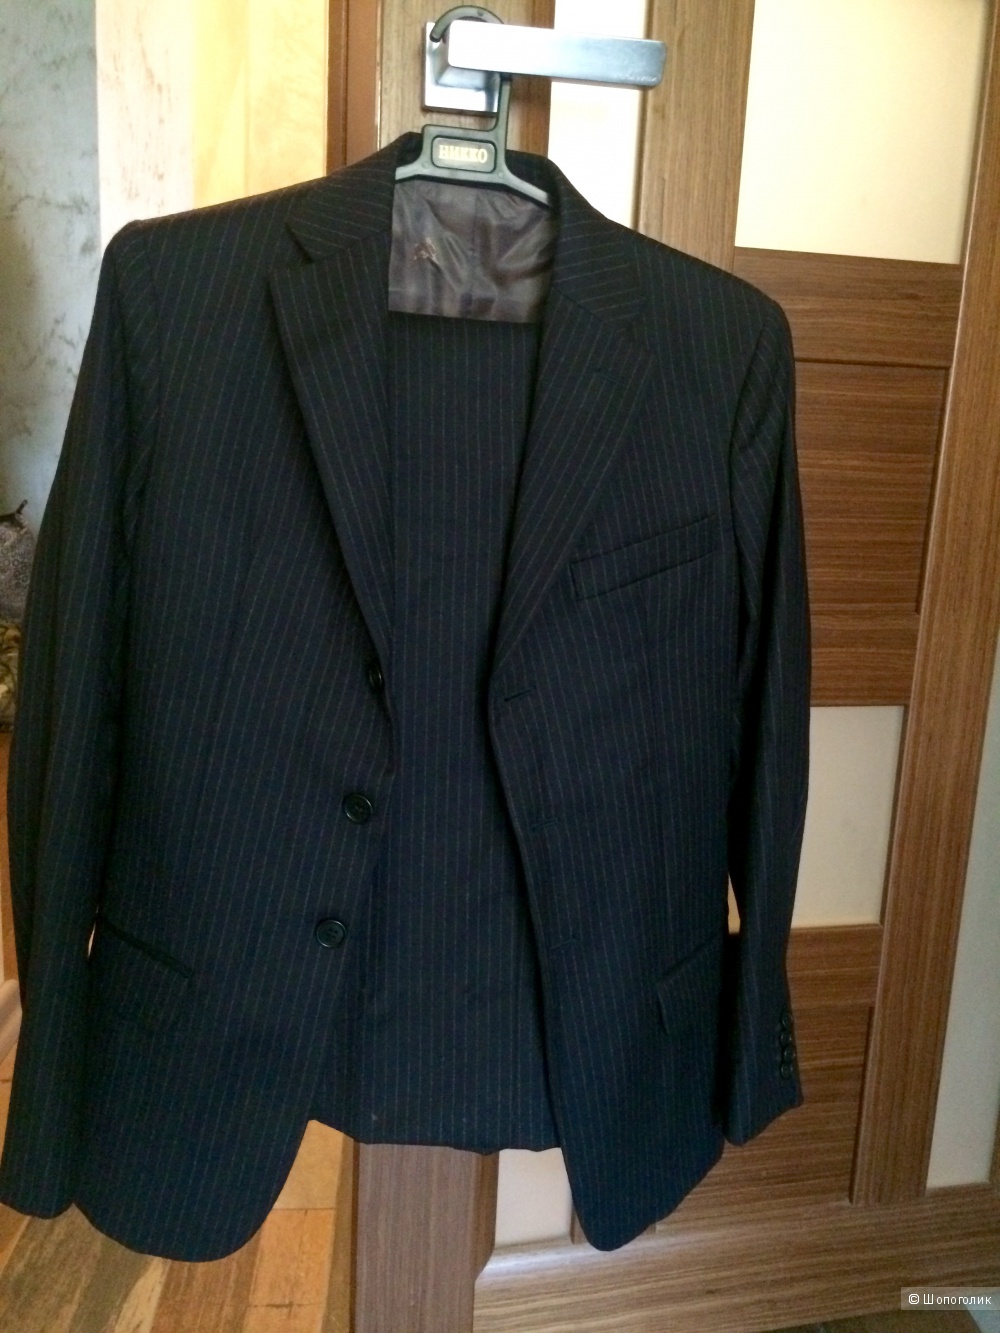 Продам костюм, пиджак и брюки, размер S,  оригинал, Италия, Brooksfield